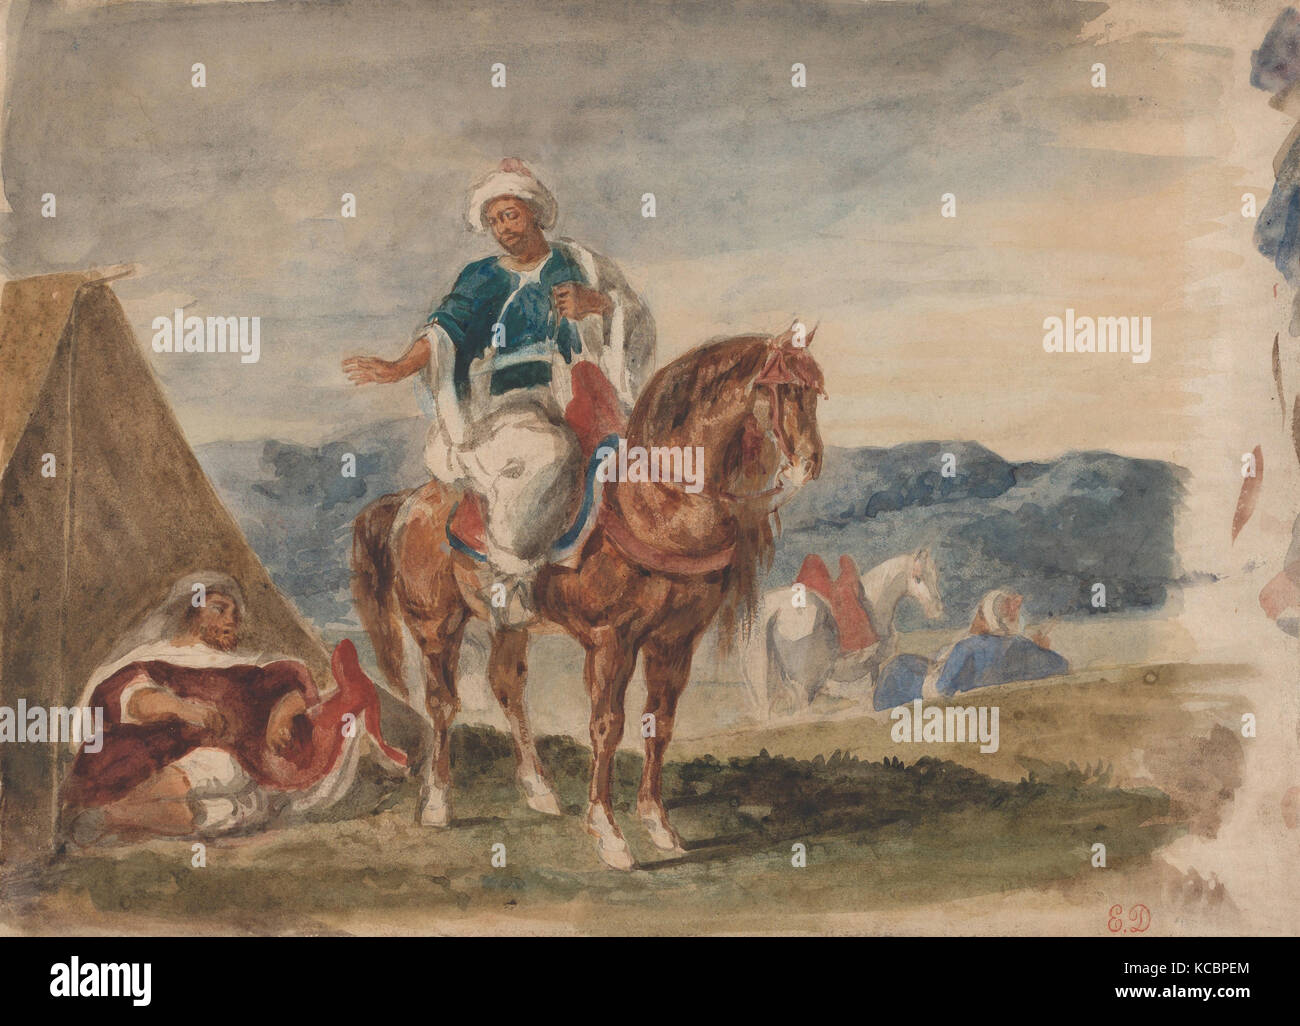 Three Arab Horsemen at an Encampment, Eugène Delacroix, ca. 1832 Stock Photo